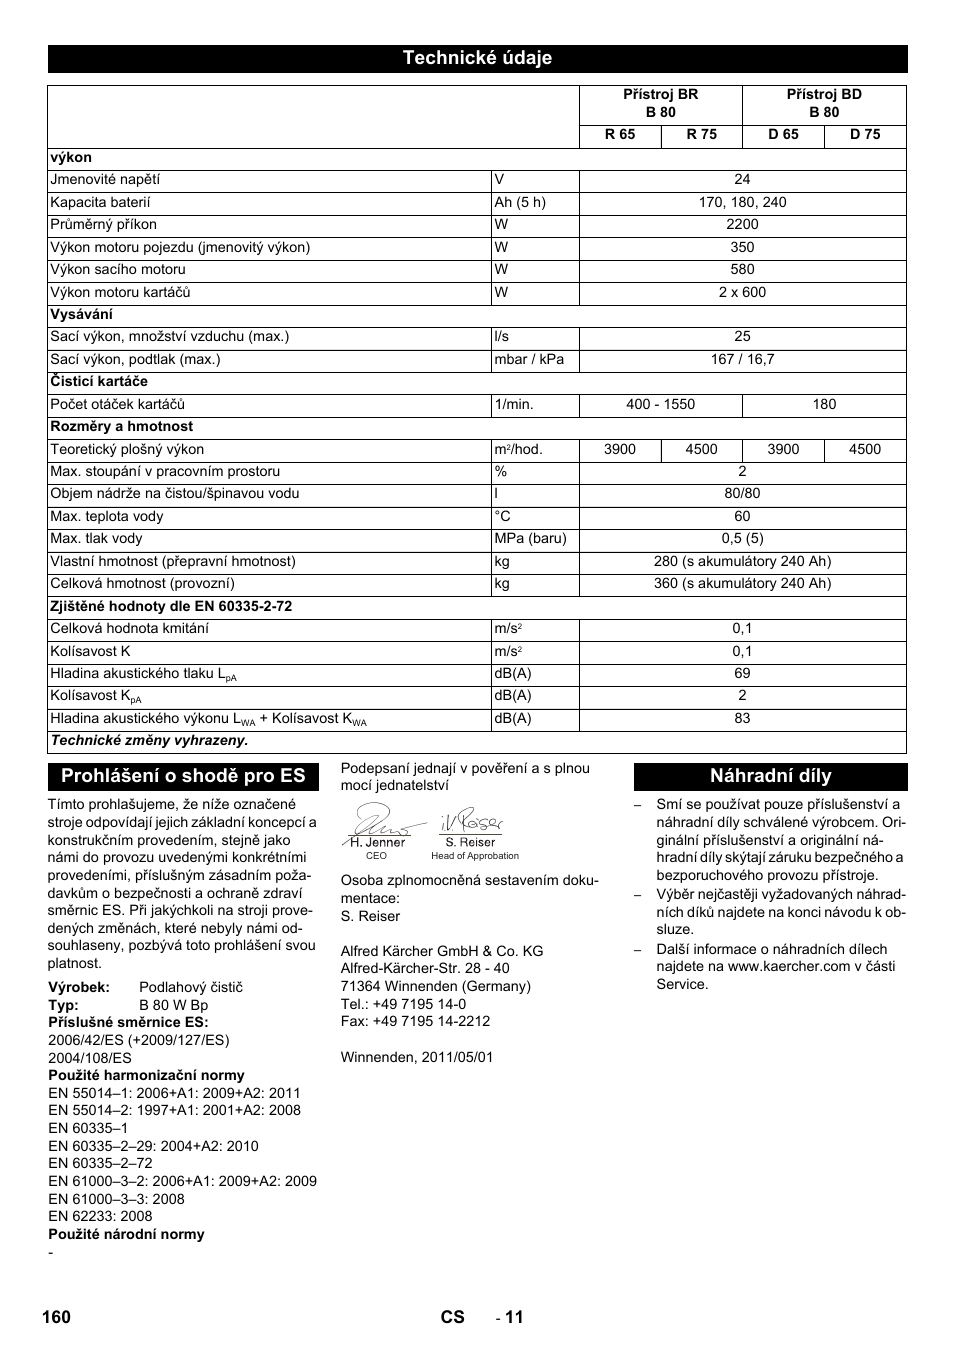 Technické údaje, Prohlášení o shodě pro es, Náhradní díly | Karcher B 80 W  User Manual | Page 160 / 310 | Original mode